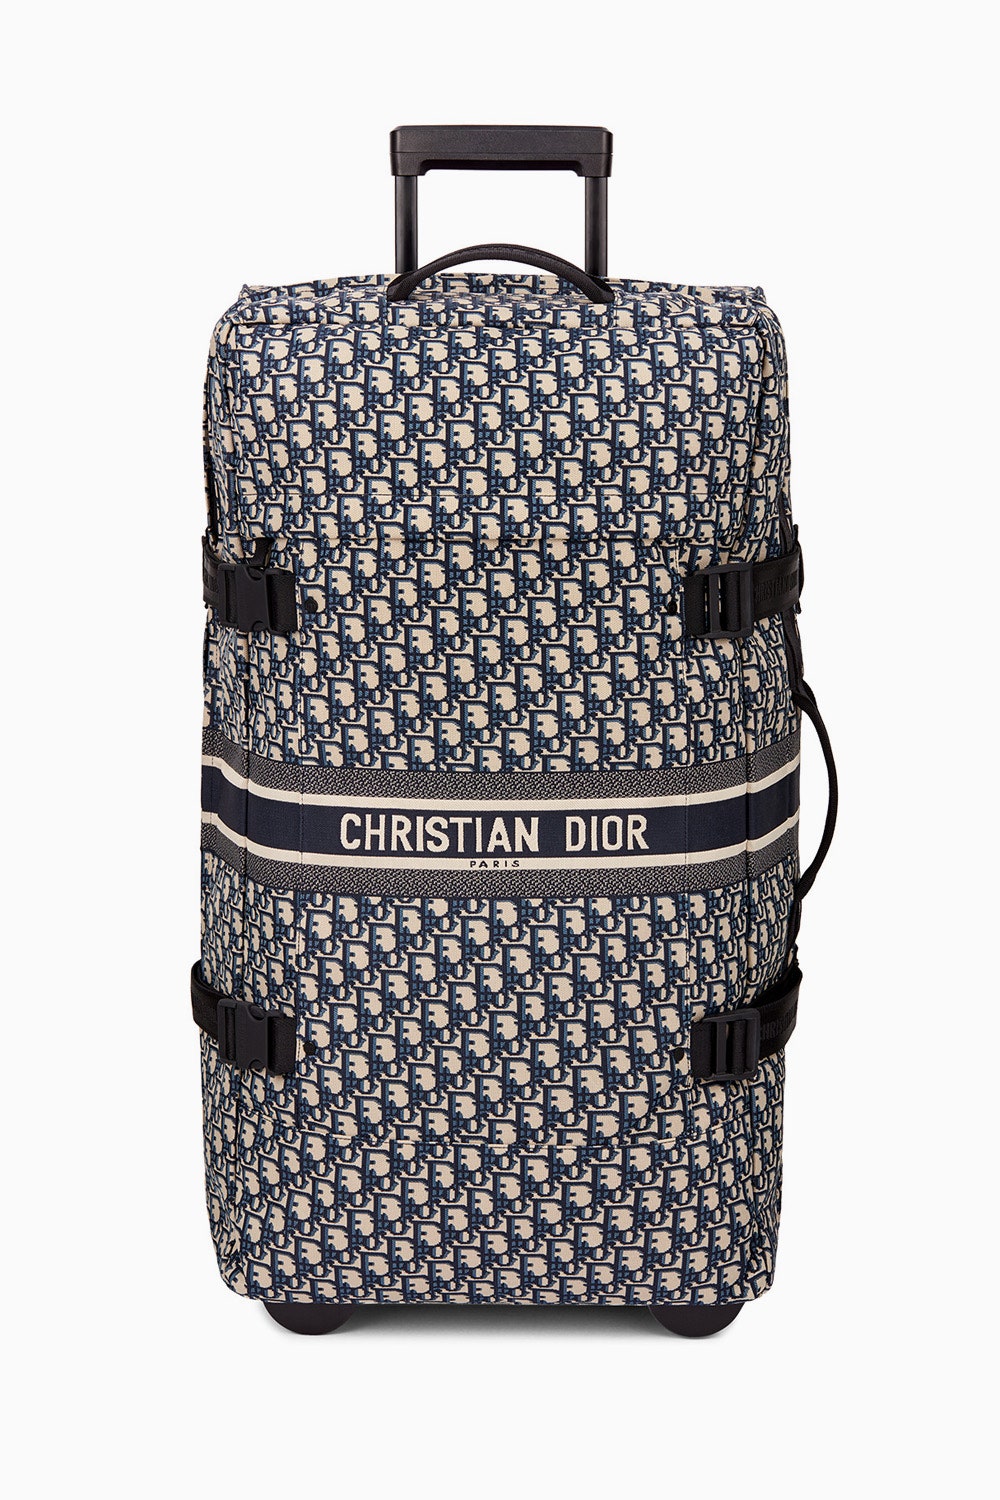 Christian Dior создали самые желанные чемоданы